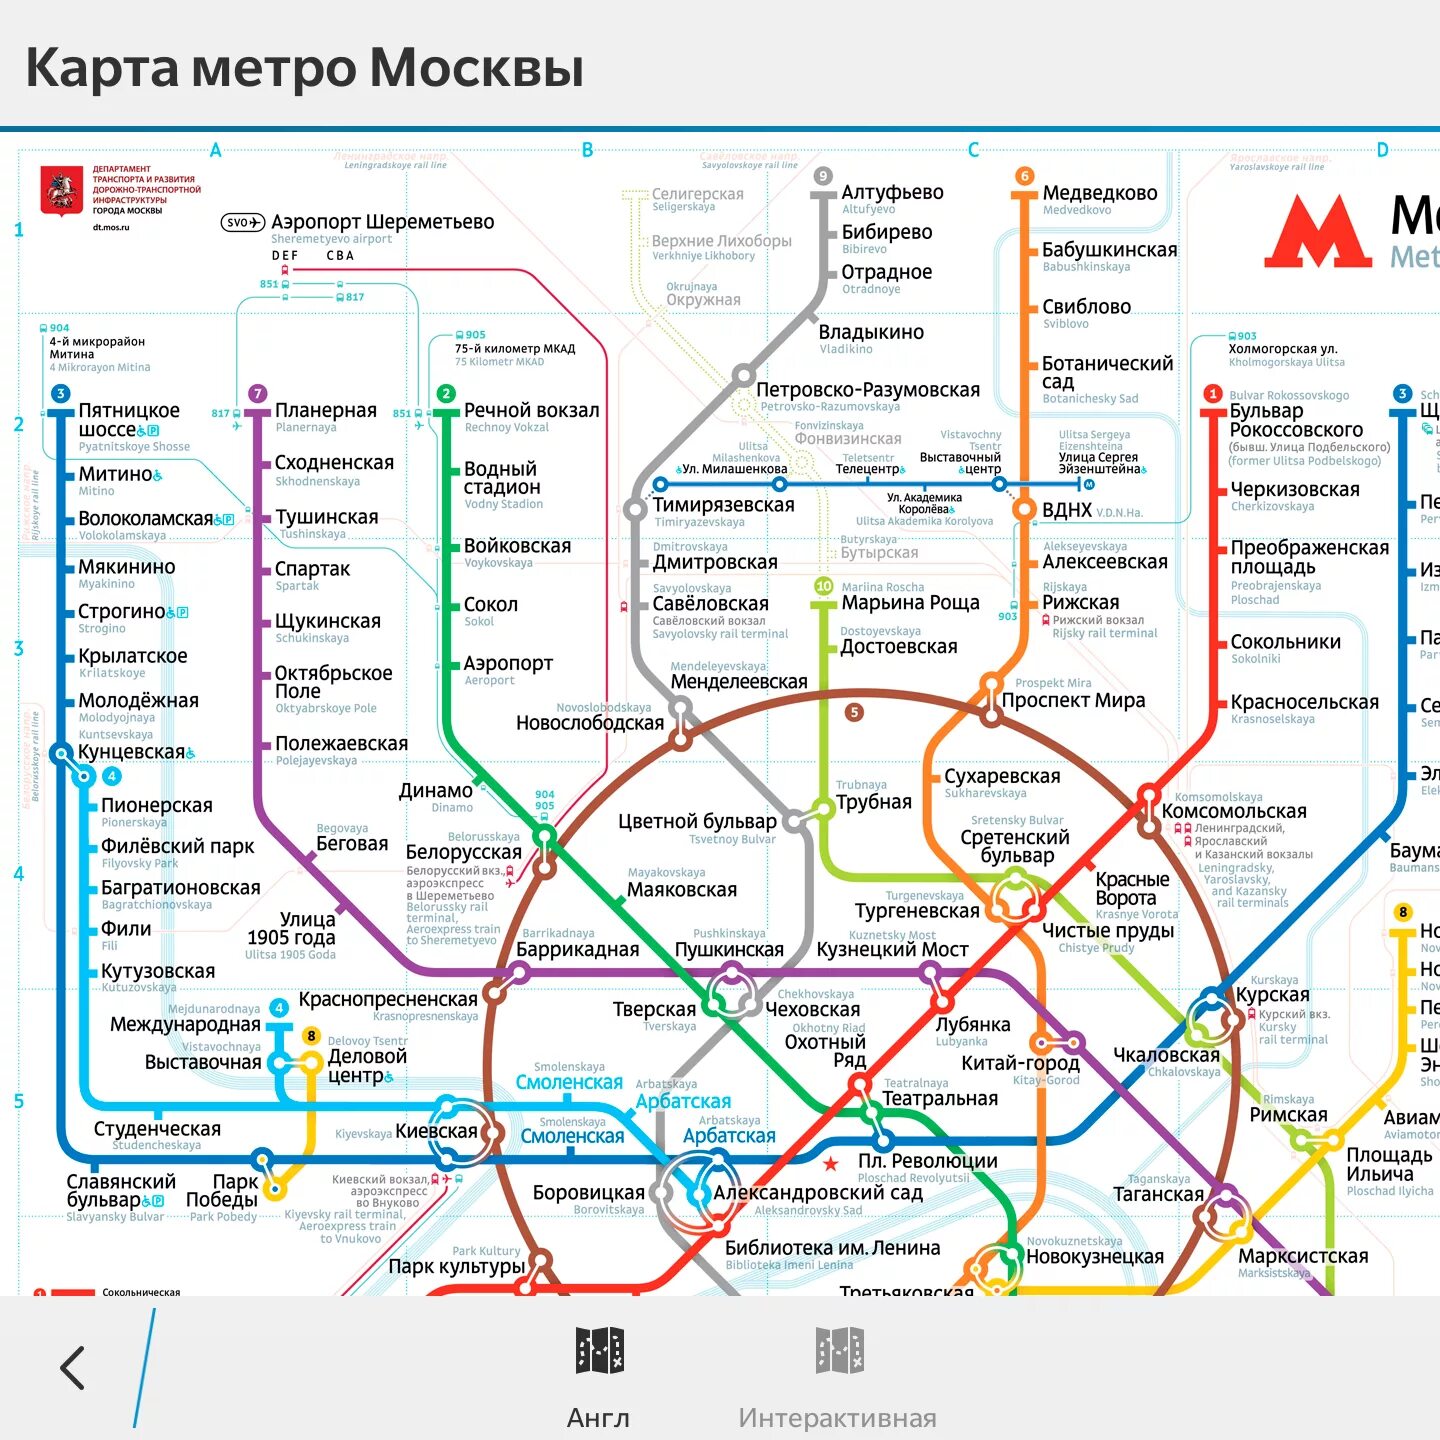 Метро северная на карте. Карта Московского метрополитена Ховрино. Метро Ховрино на карте Москвы. Метро Ховрино на карте метрополитена. Станция метро Ховрино на схеме.